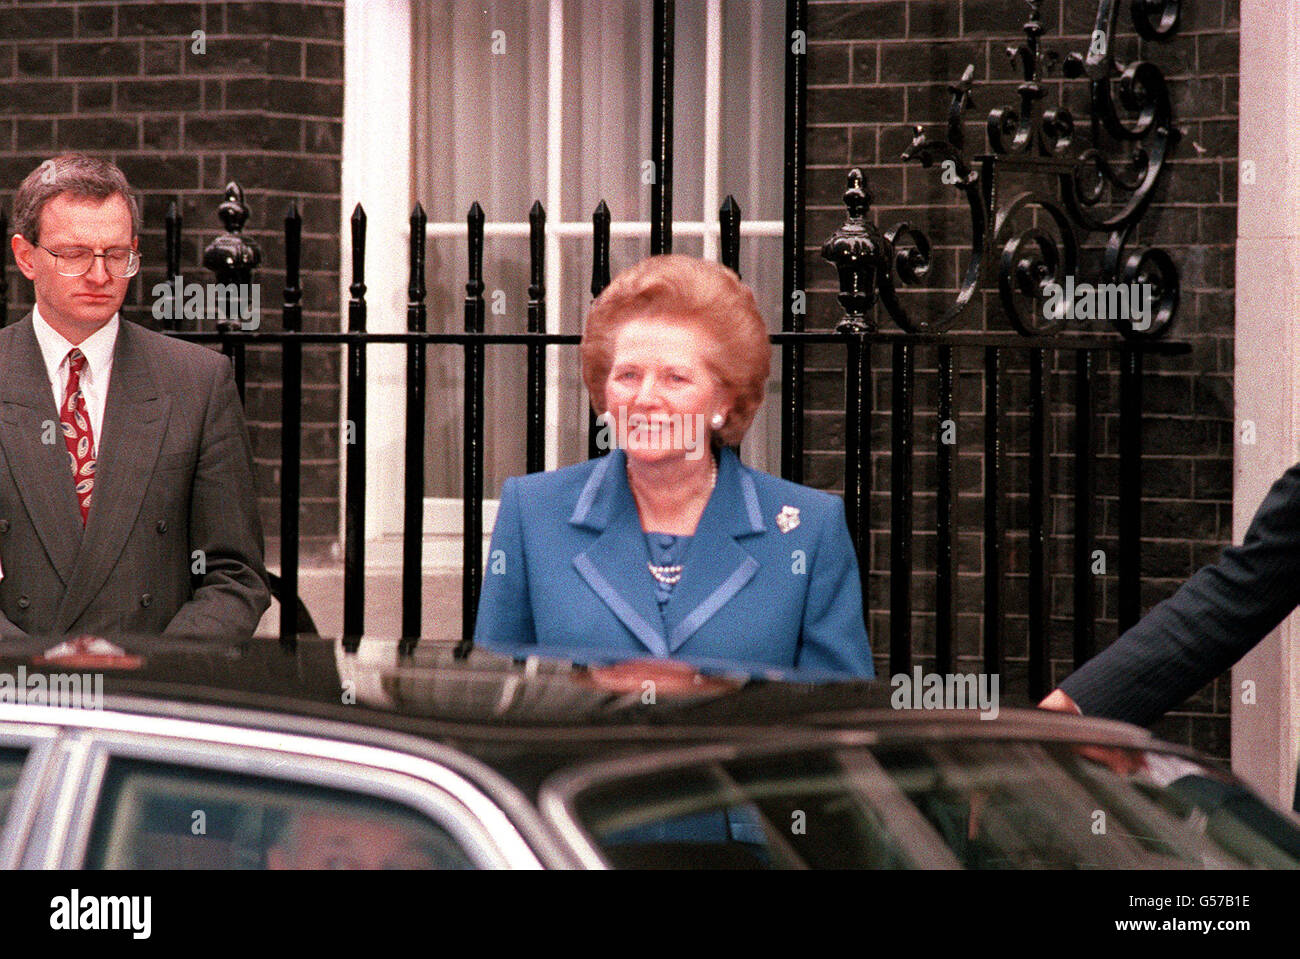 22. NOVEMBER: An diesem Tag im Jahr 1990 reichte Margaret Thatcher ihren Rücktritt ein. Margaret Thatcher kündigt Rücktritt an: Premierministerin Thatcher verlässt die Downing Street, um bei der Queen zu einer Audienz zu kommen. Stockfoto